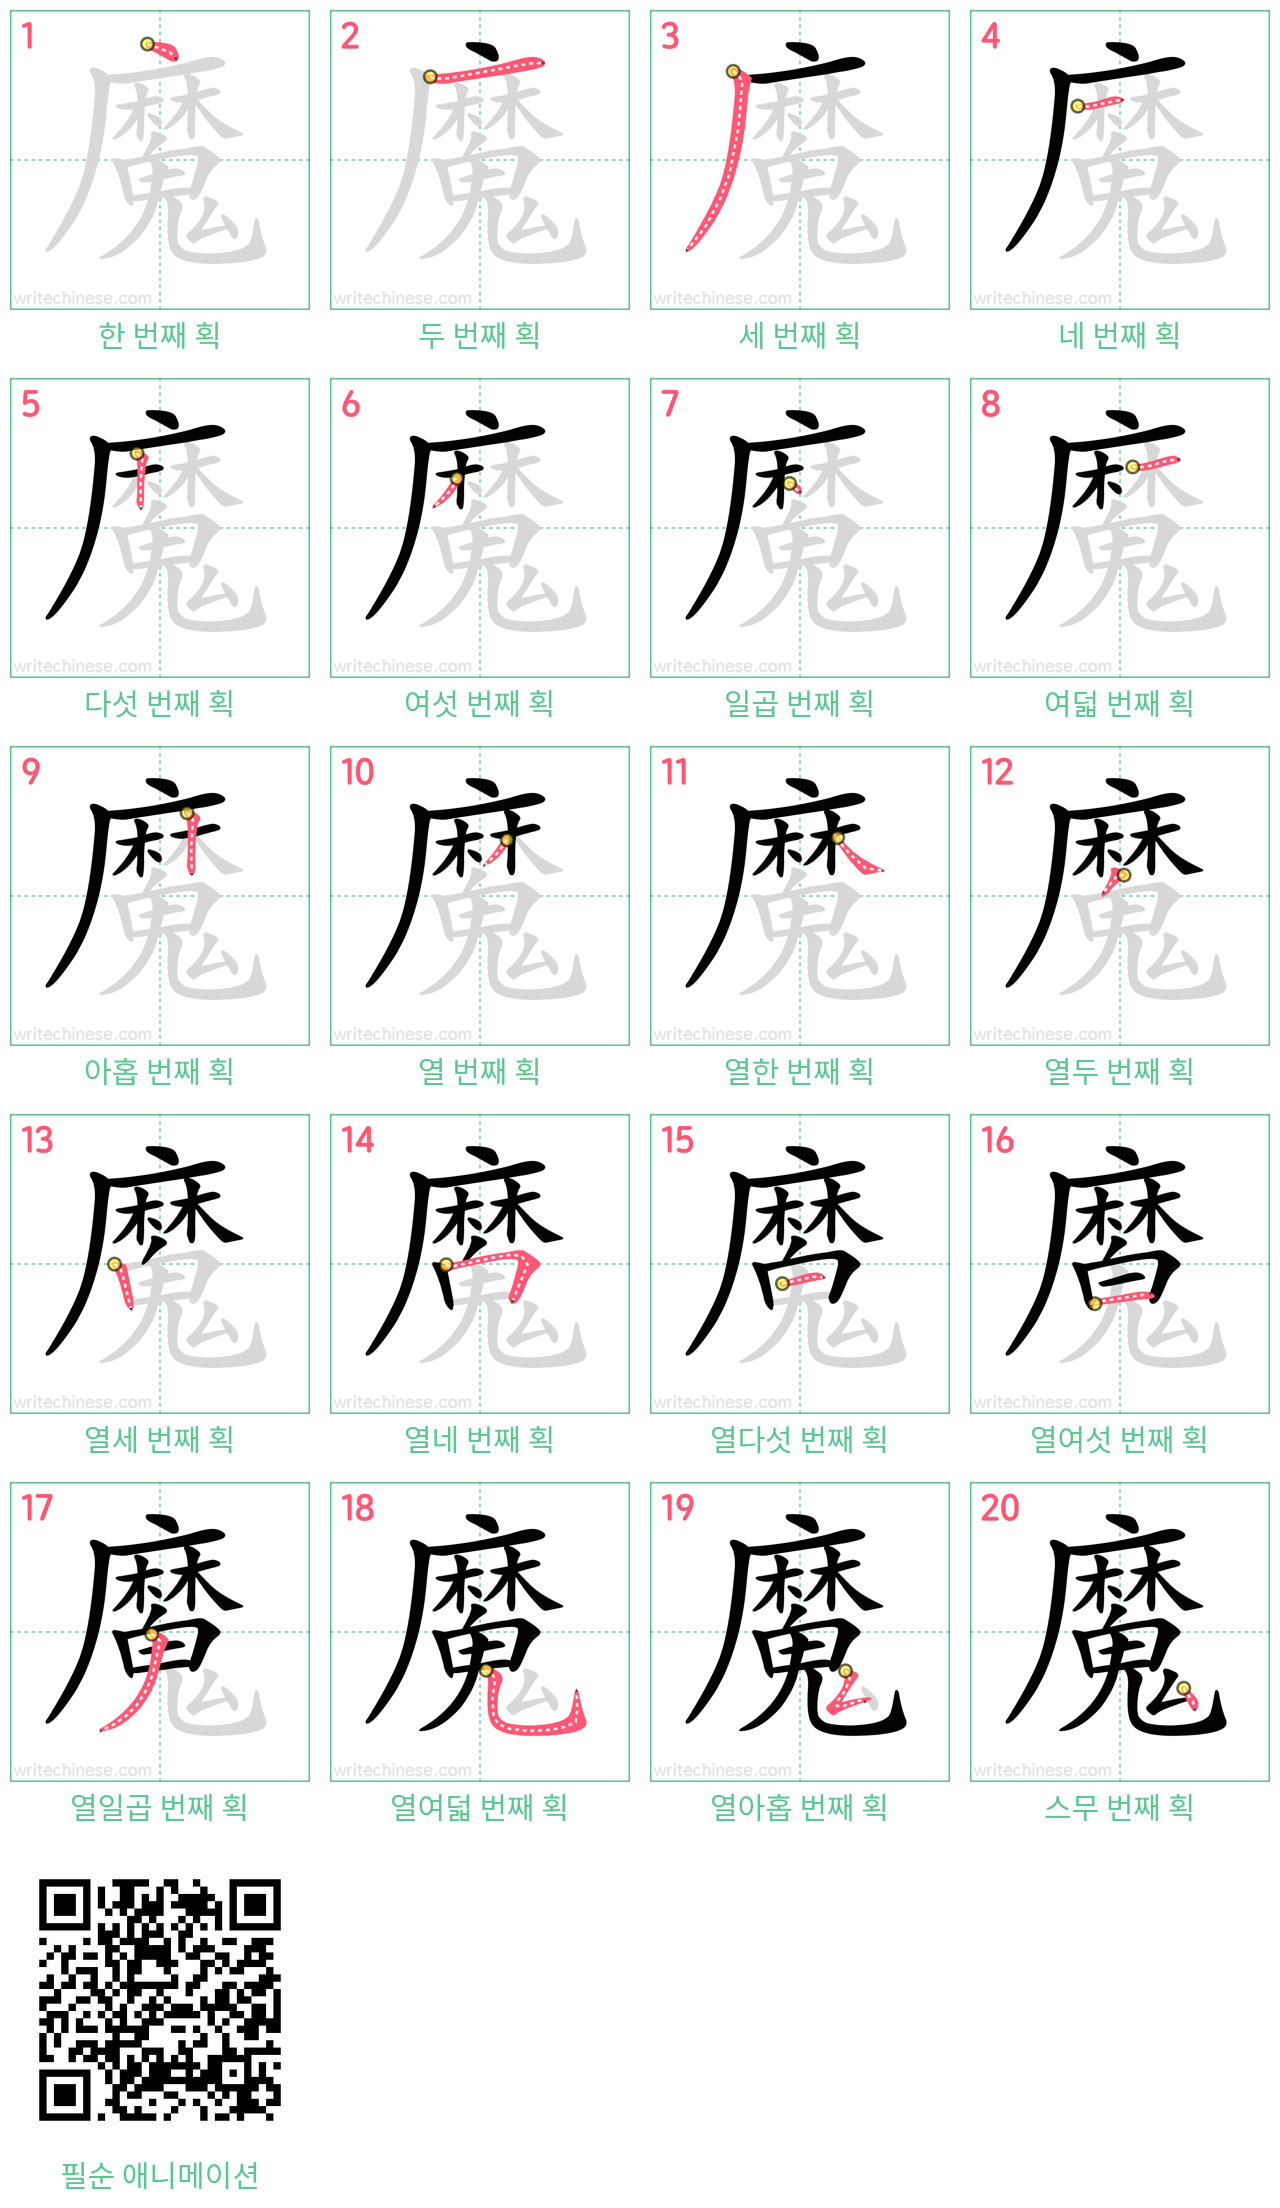 魔 step-by-step stroke order diagrams